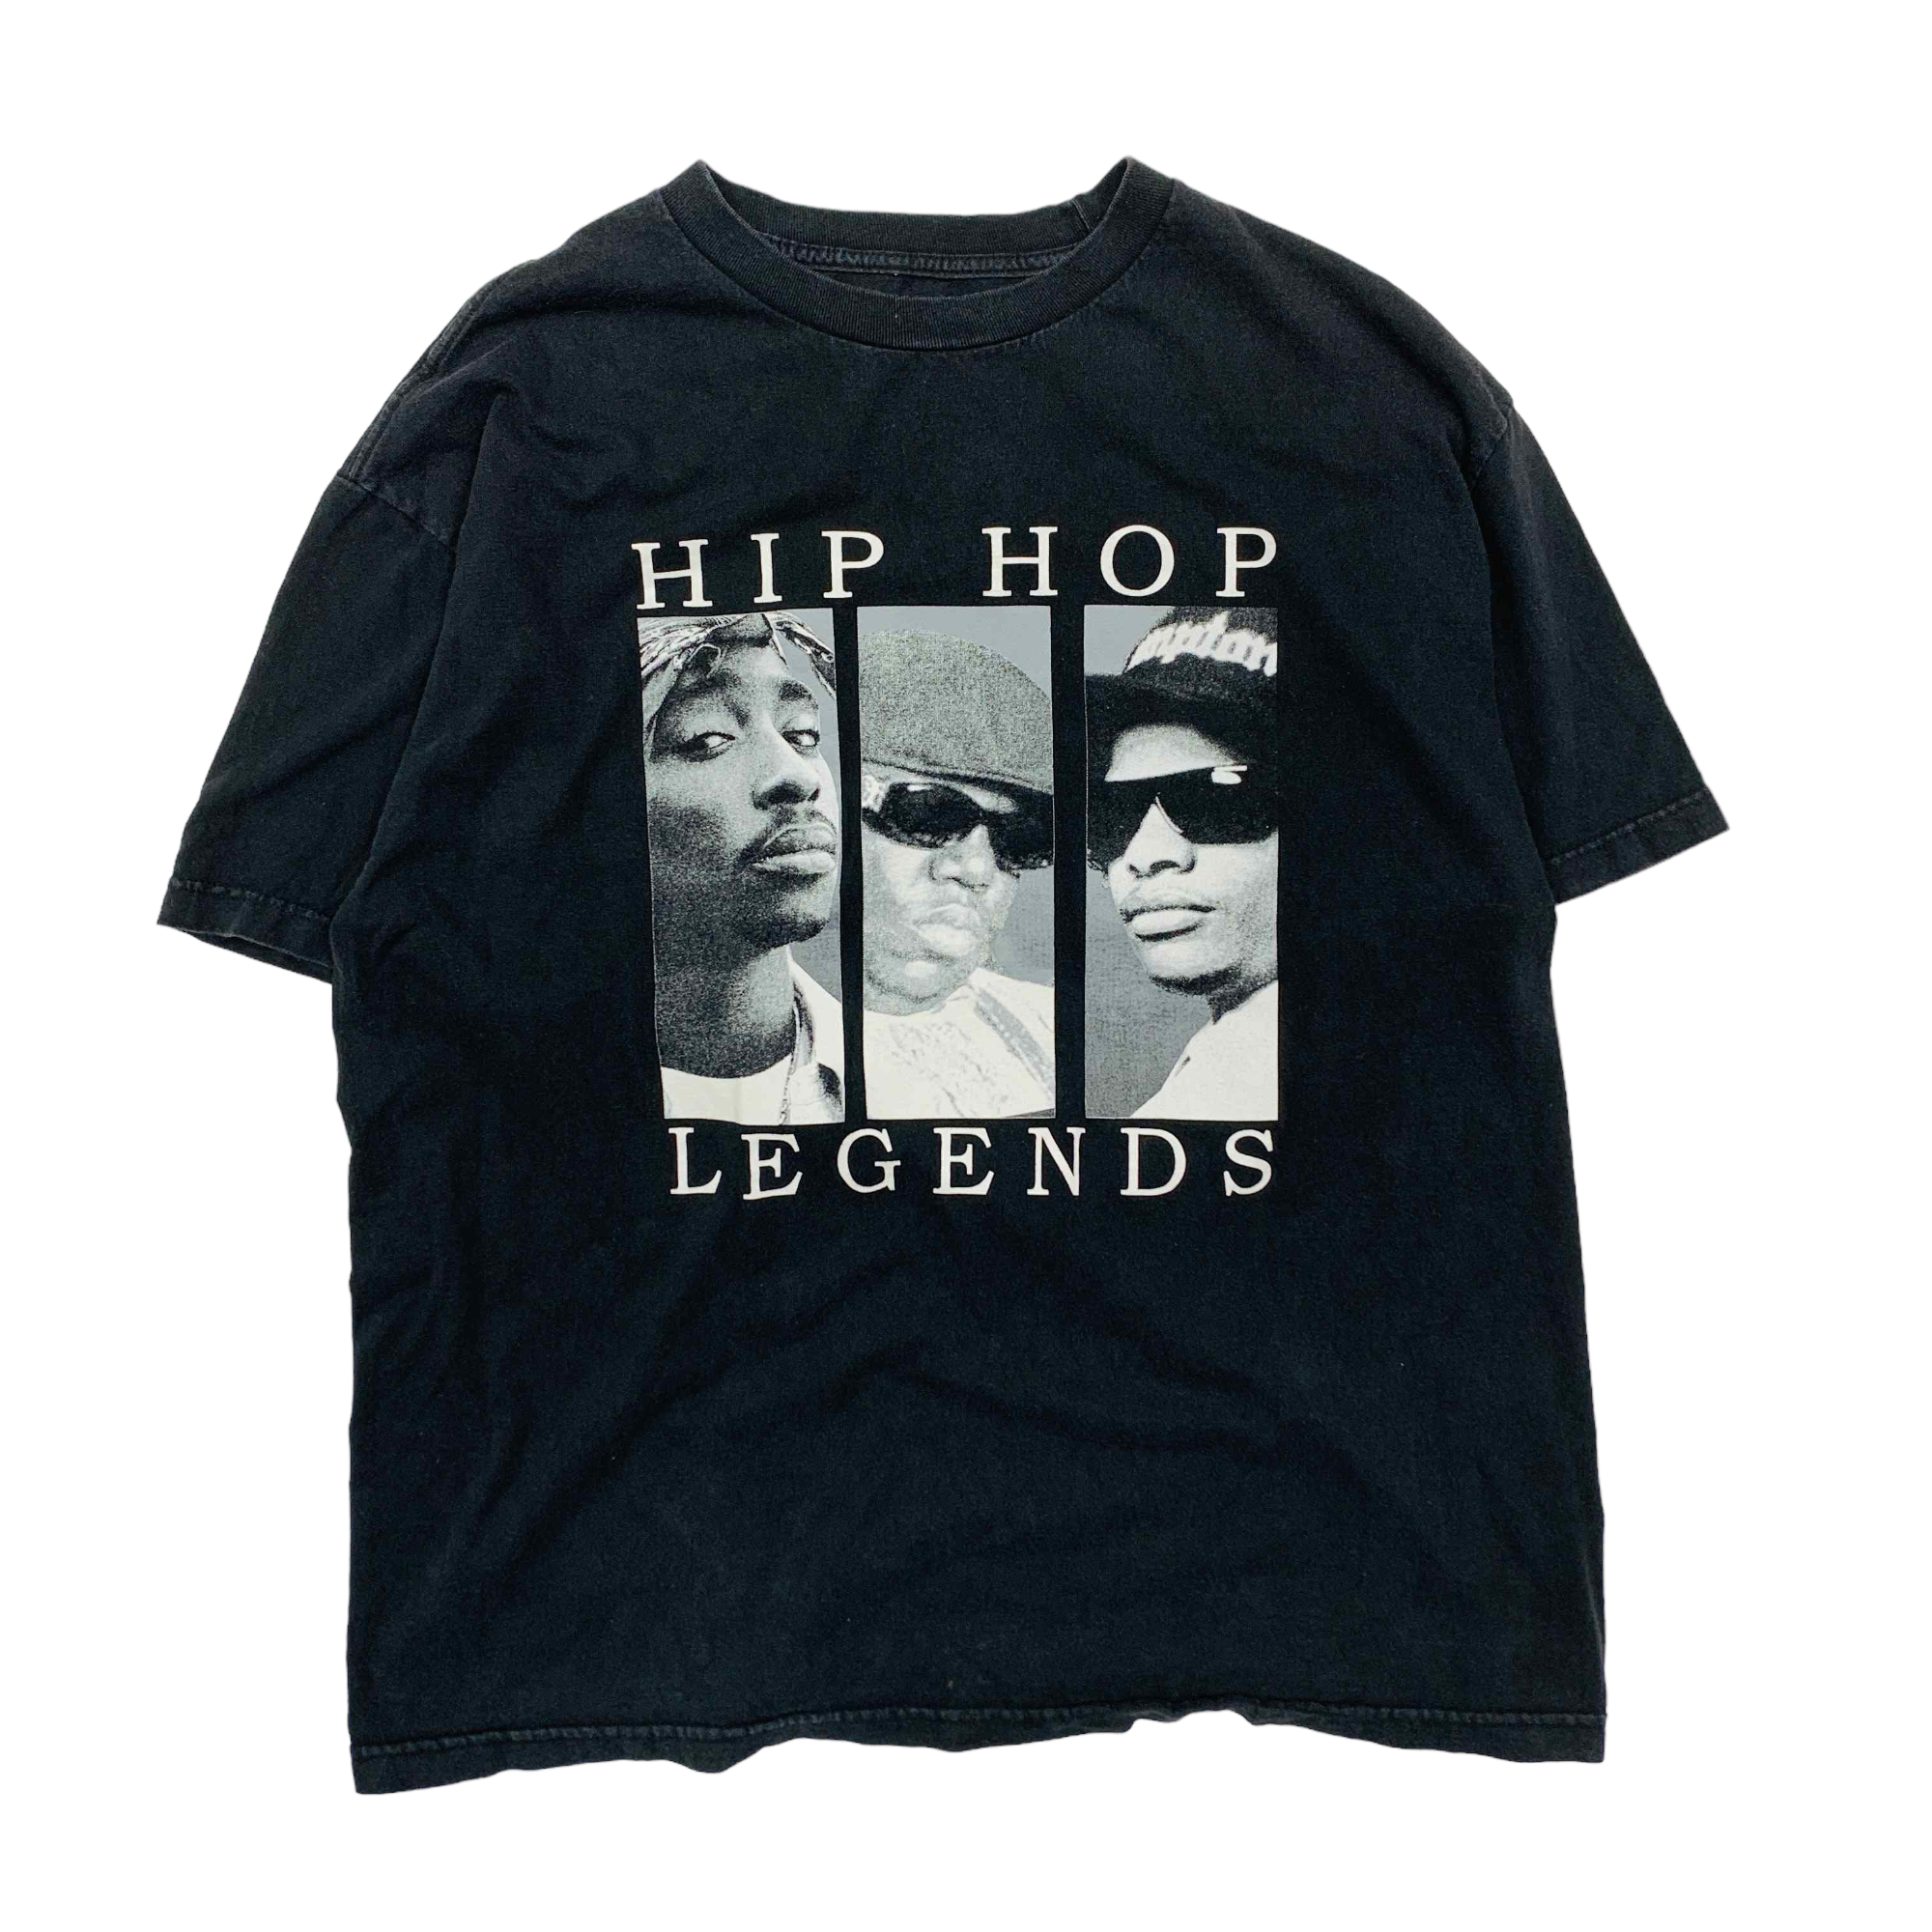 Hip Hop Legends T-shirt - Large